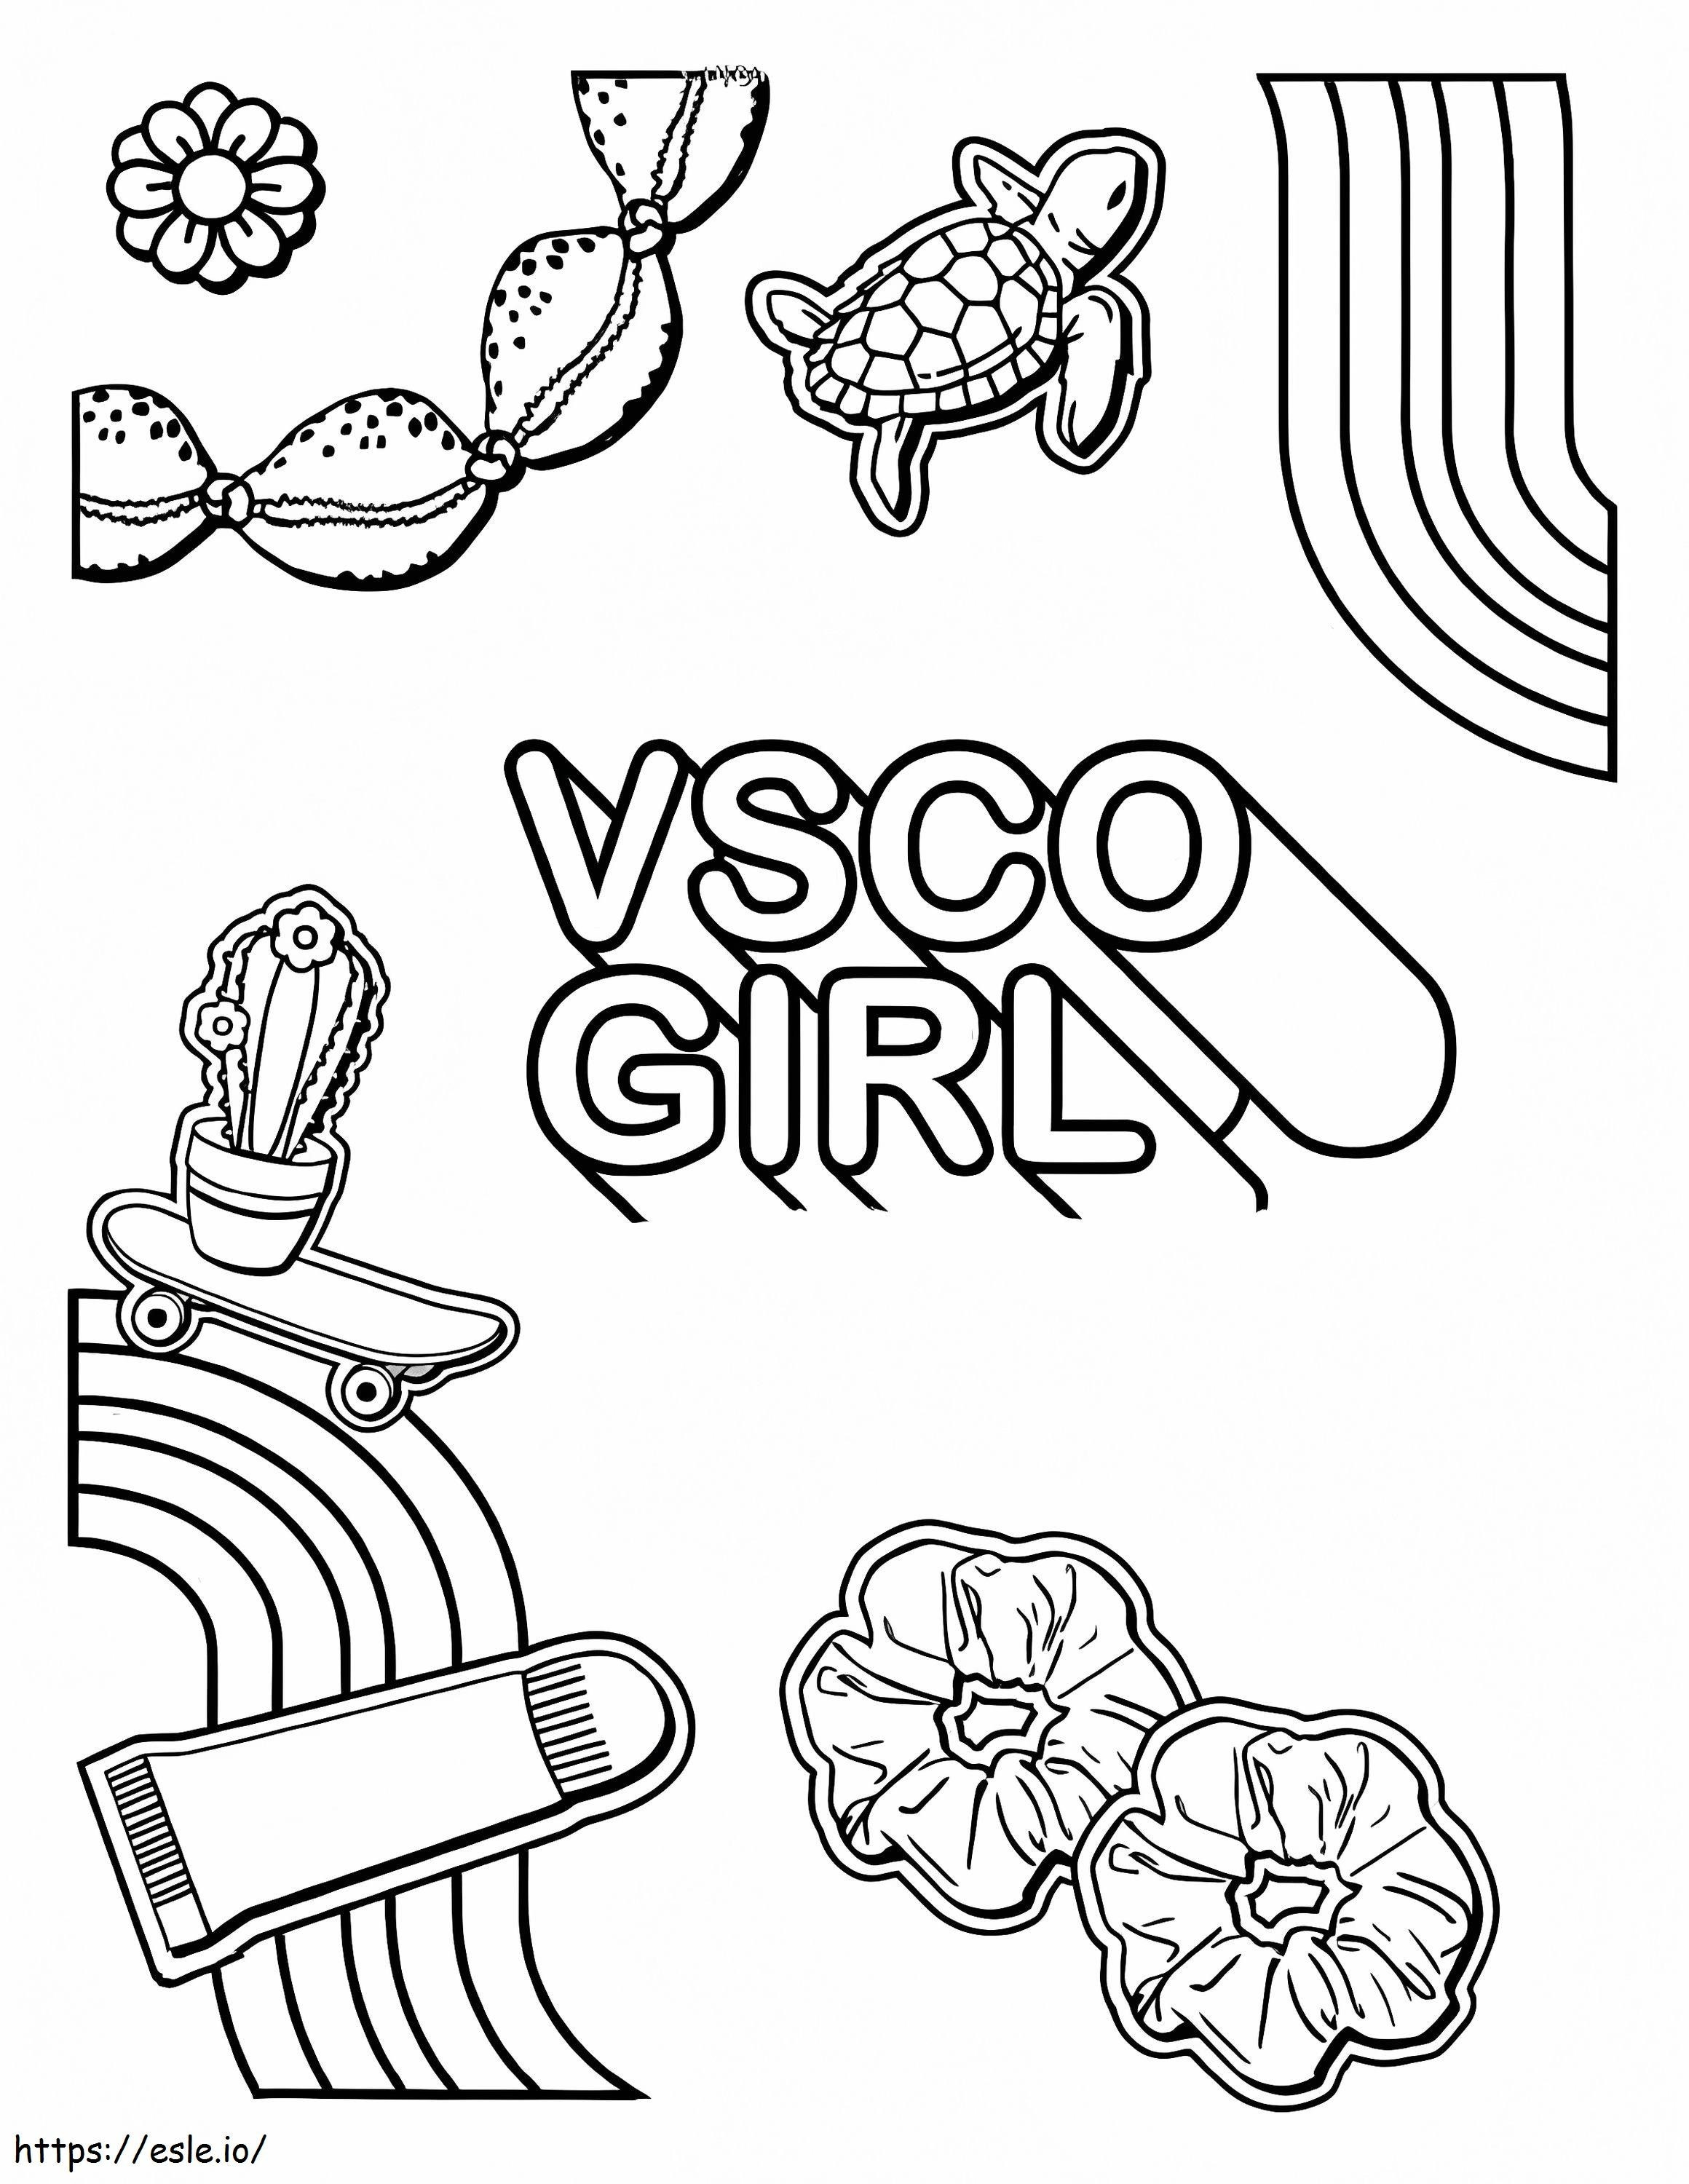 Estética Vsco Girl para colorir